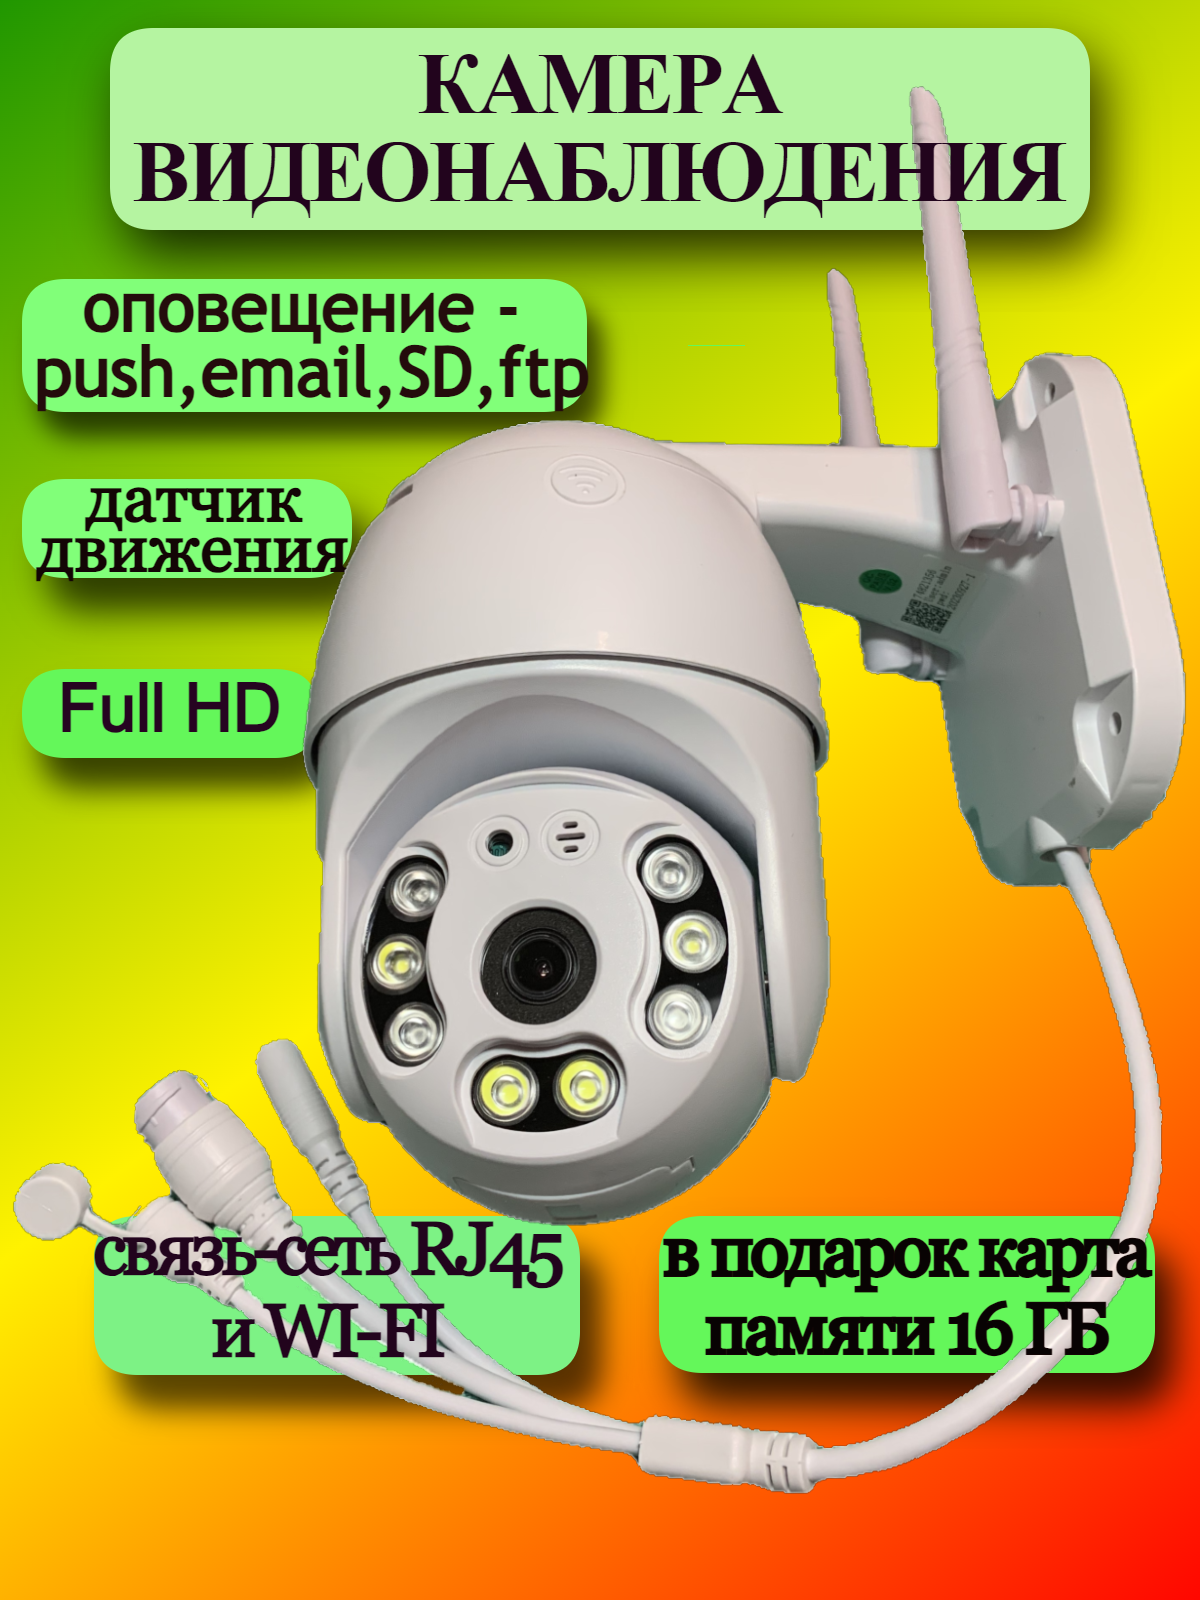 Камера видеонаблюдения для дома wi-fi, уличная, беспроводная, проводная rj-45, ip видеокамера, умный дом, обзор 360. smartcamera